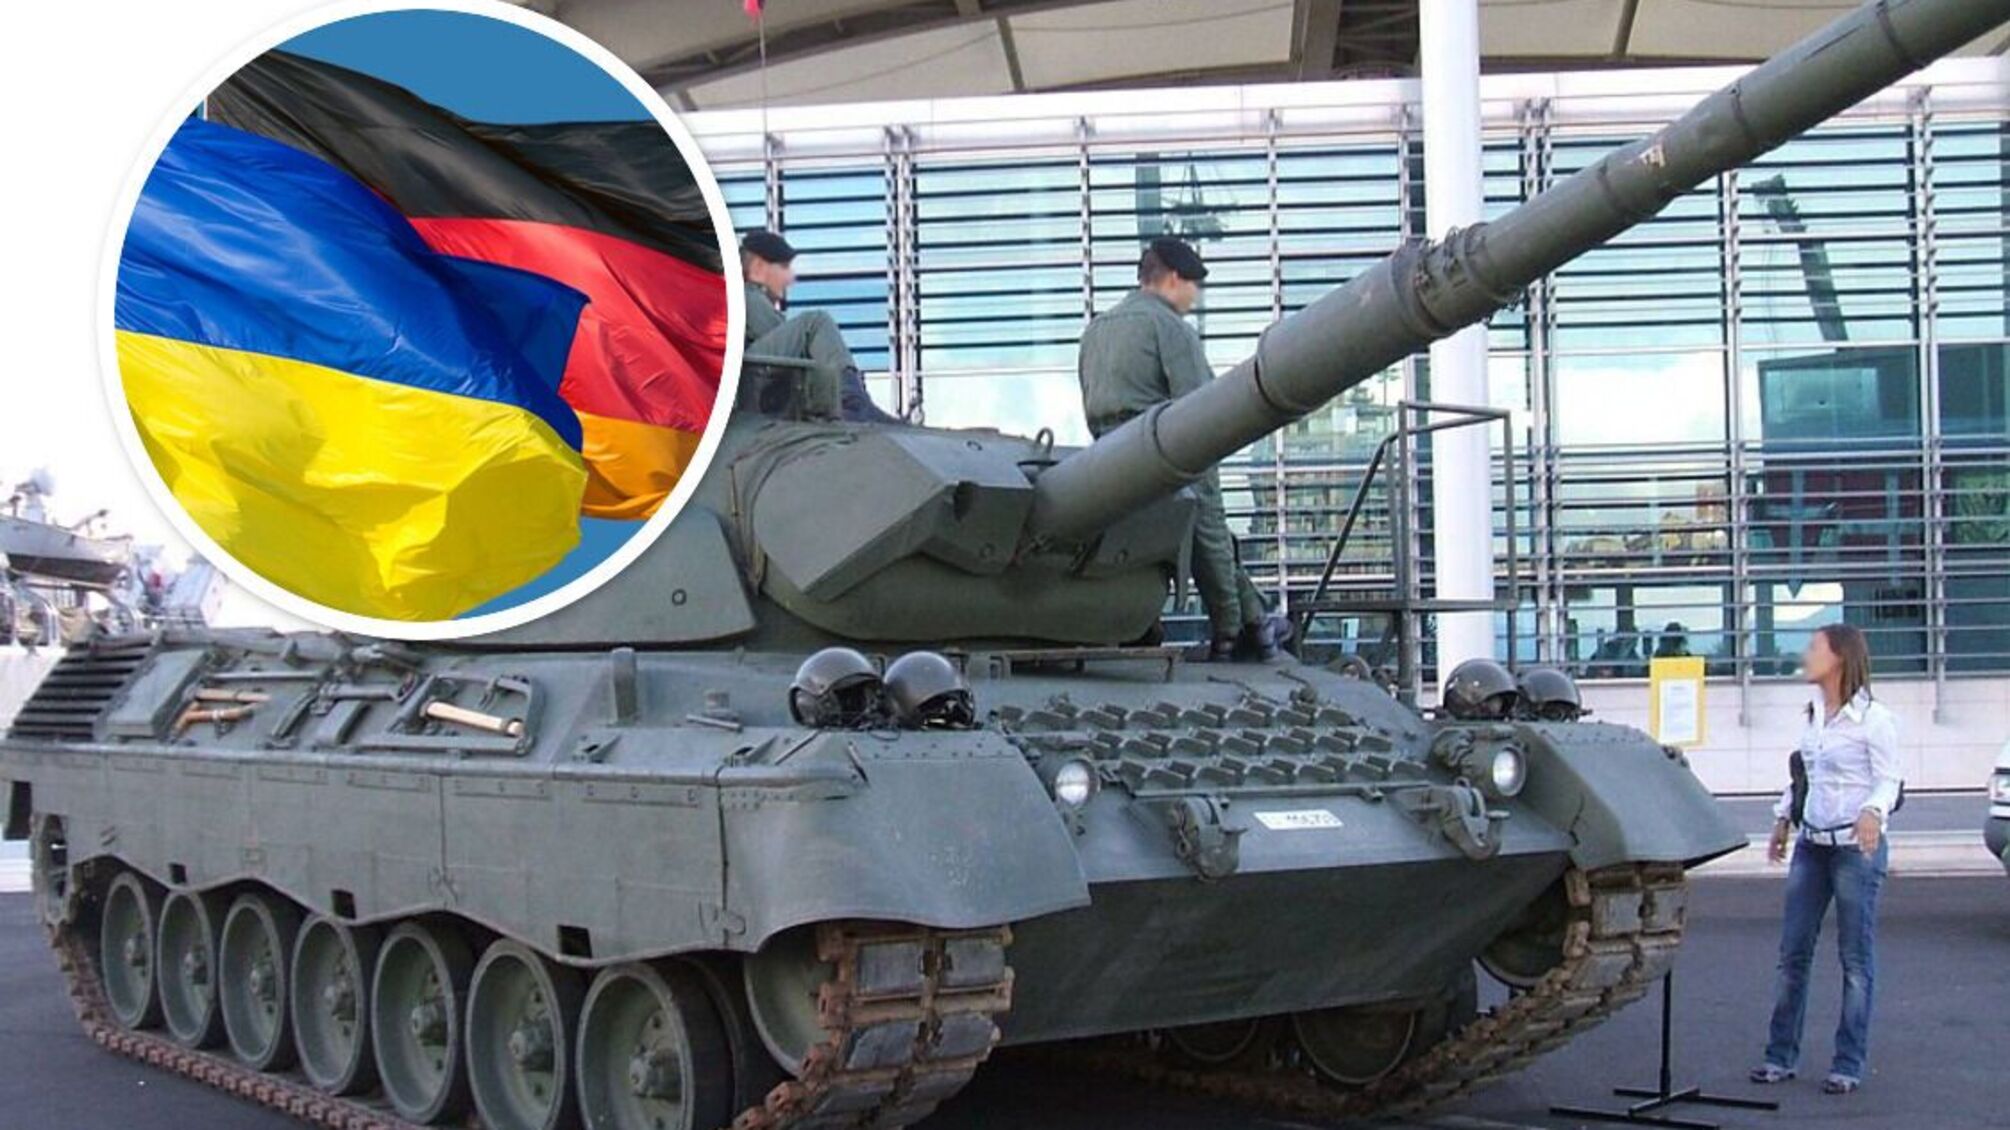 Leopard 1 для України: прийнято рішення про нову партію танків від Німеччини - Spiegel